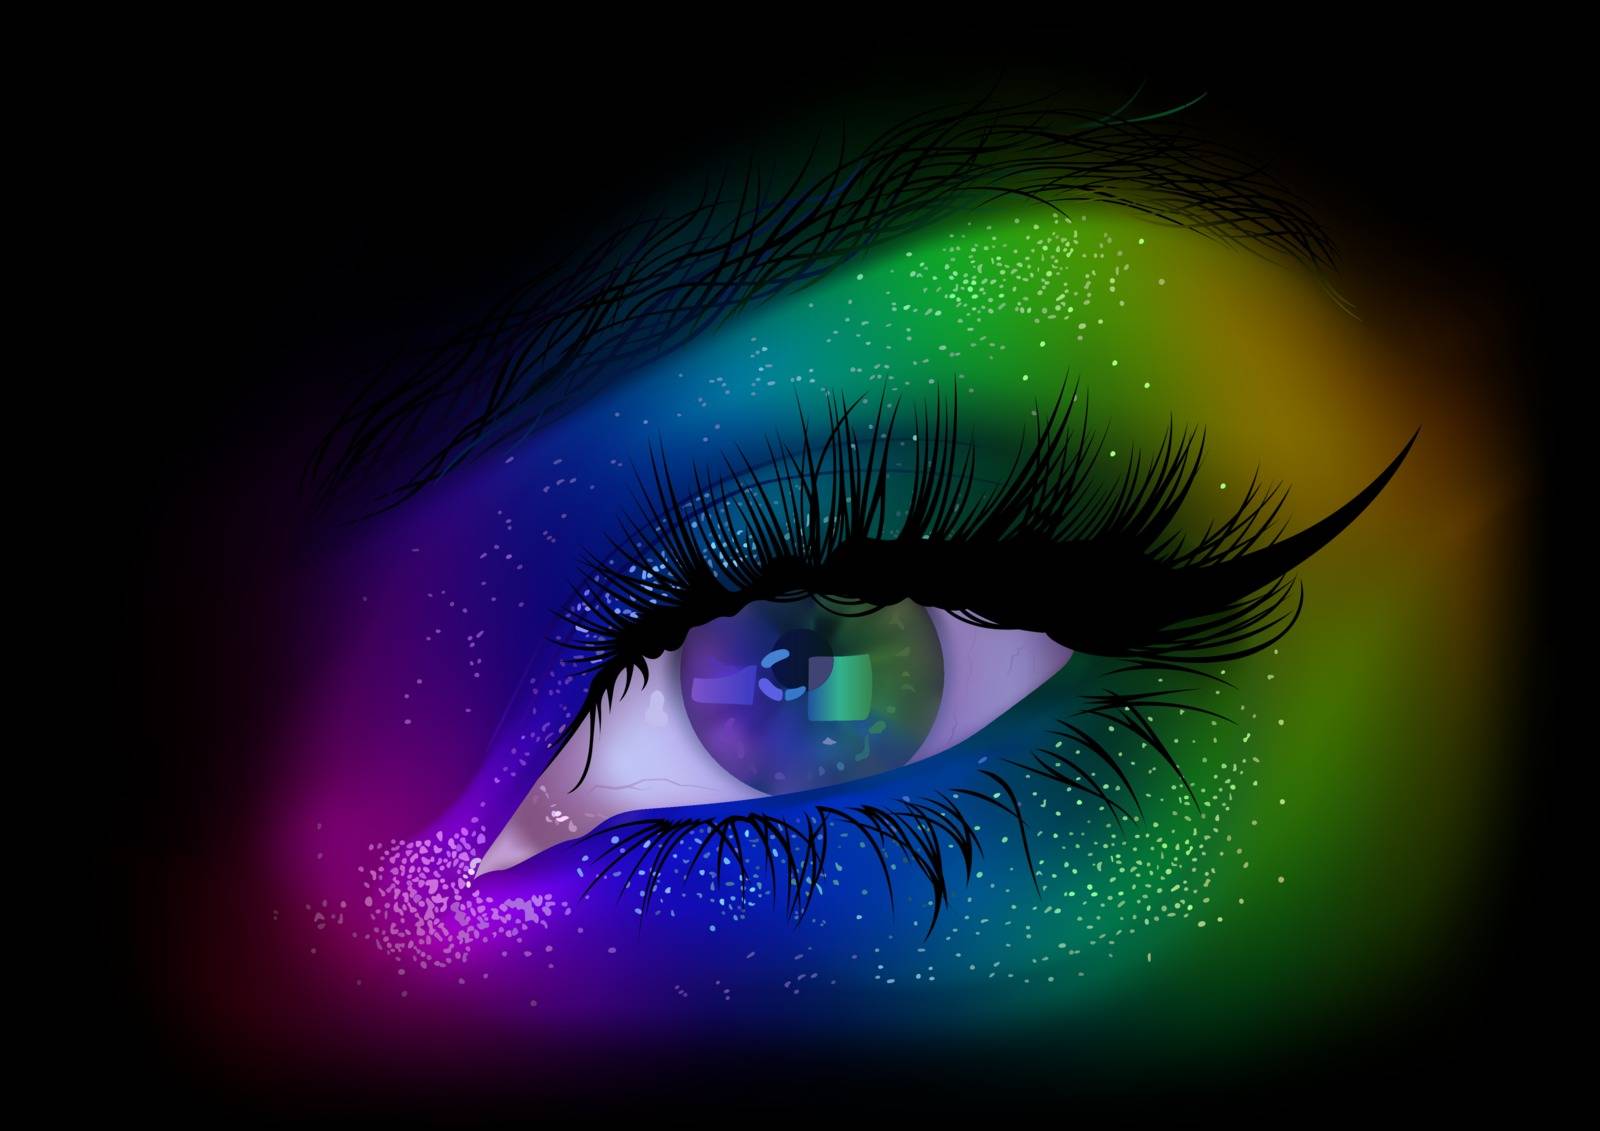 Rainbow Woman Eye Party Makeup by illustratorCZ